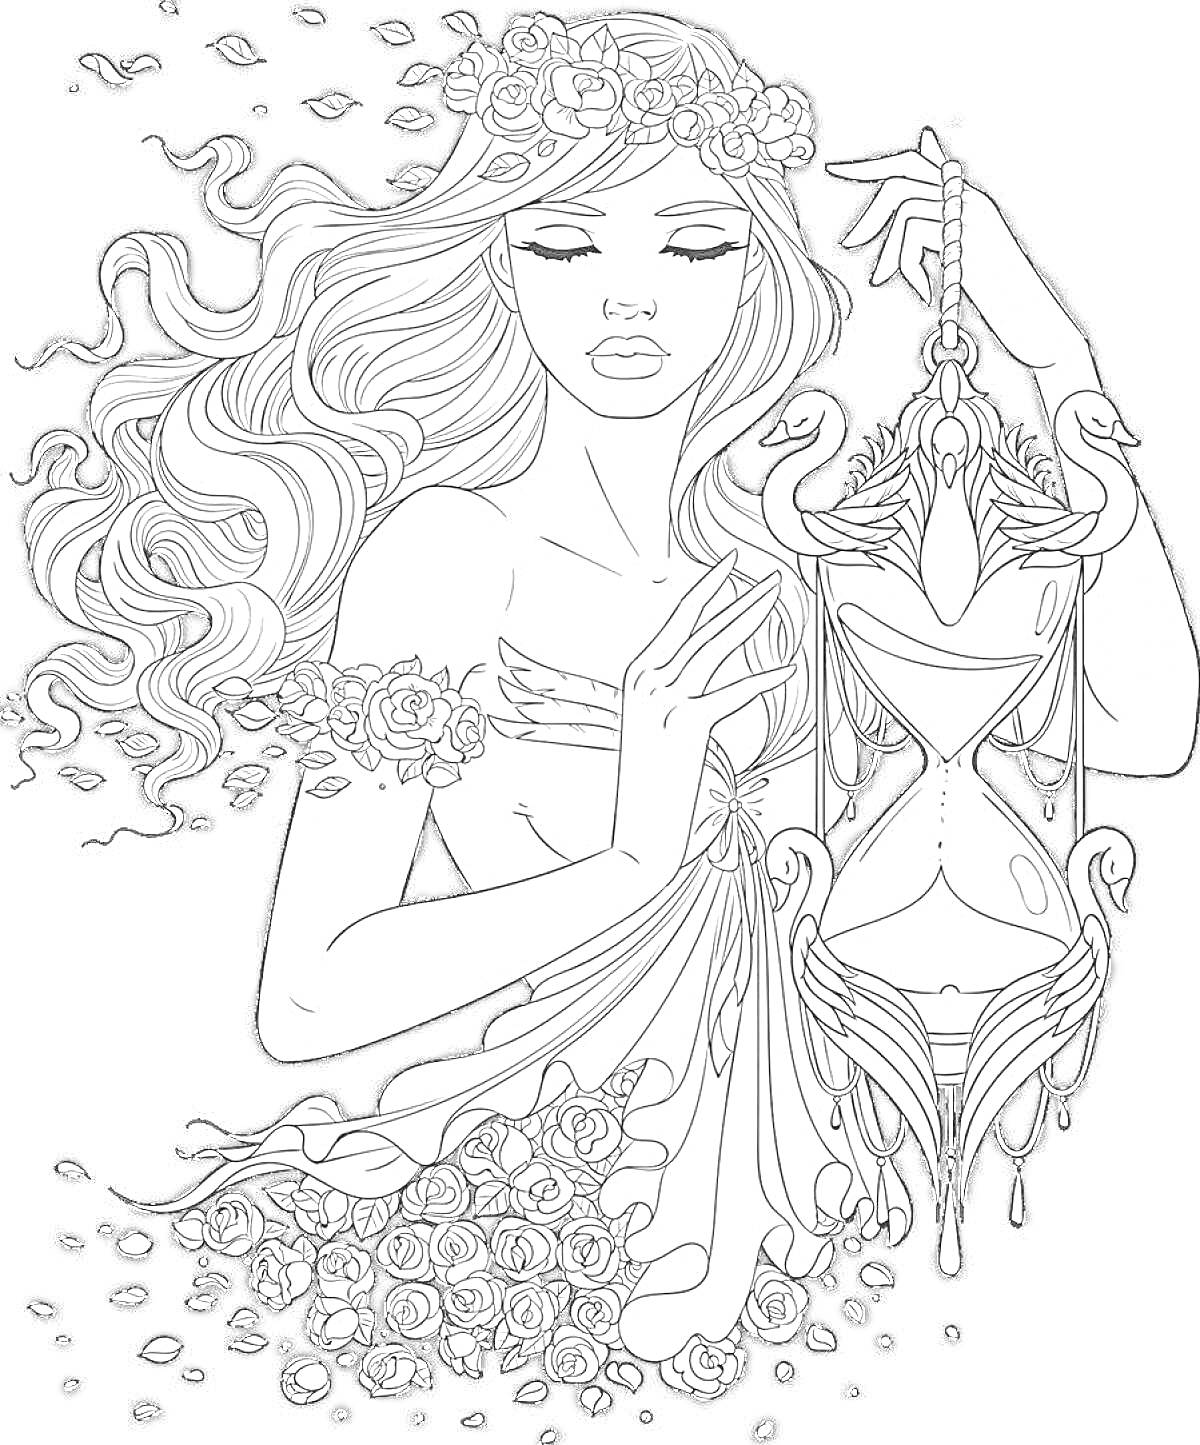 Девушка с длинными волнистыми волосами и цветочным венком, держащая песочные часы